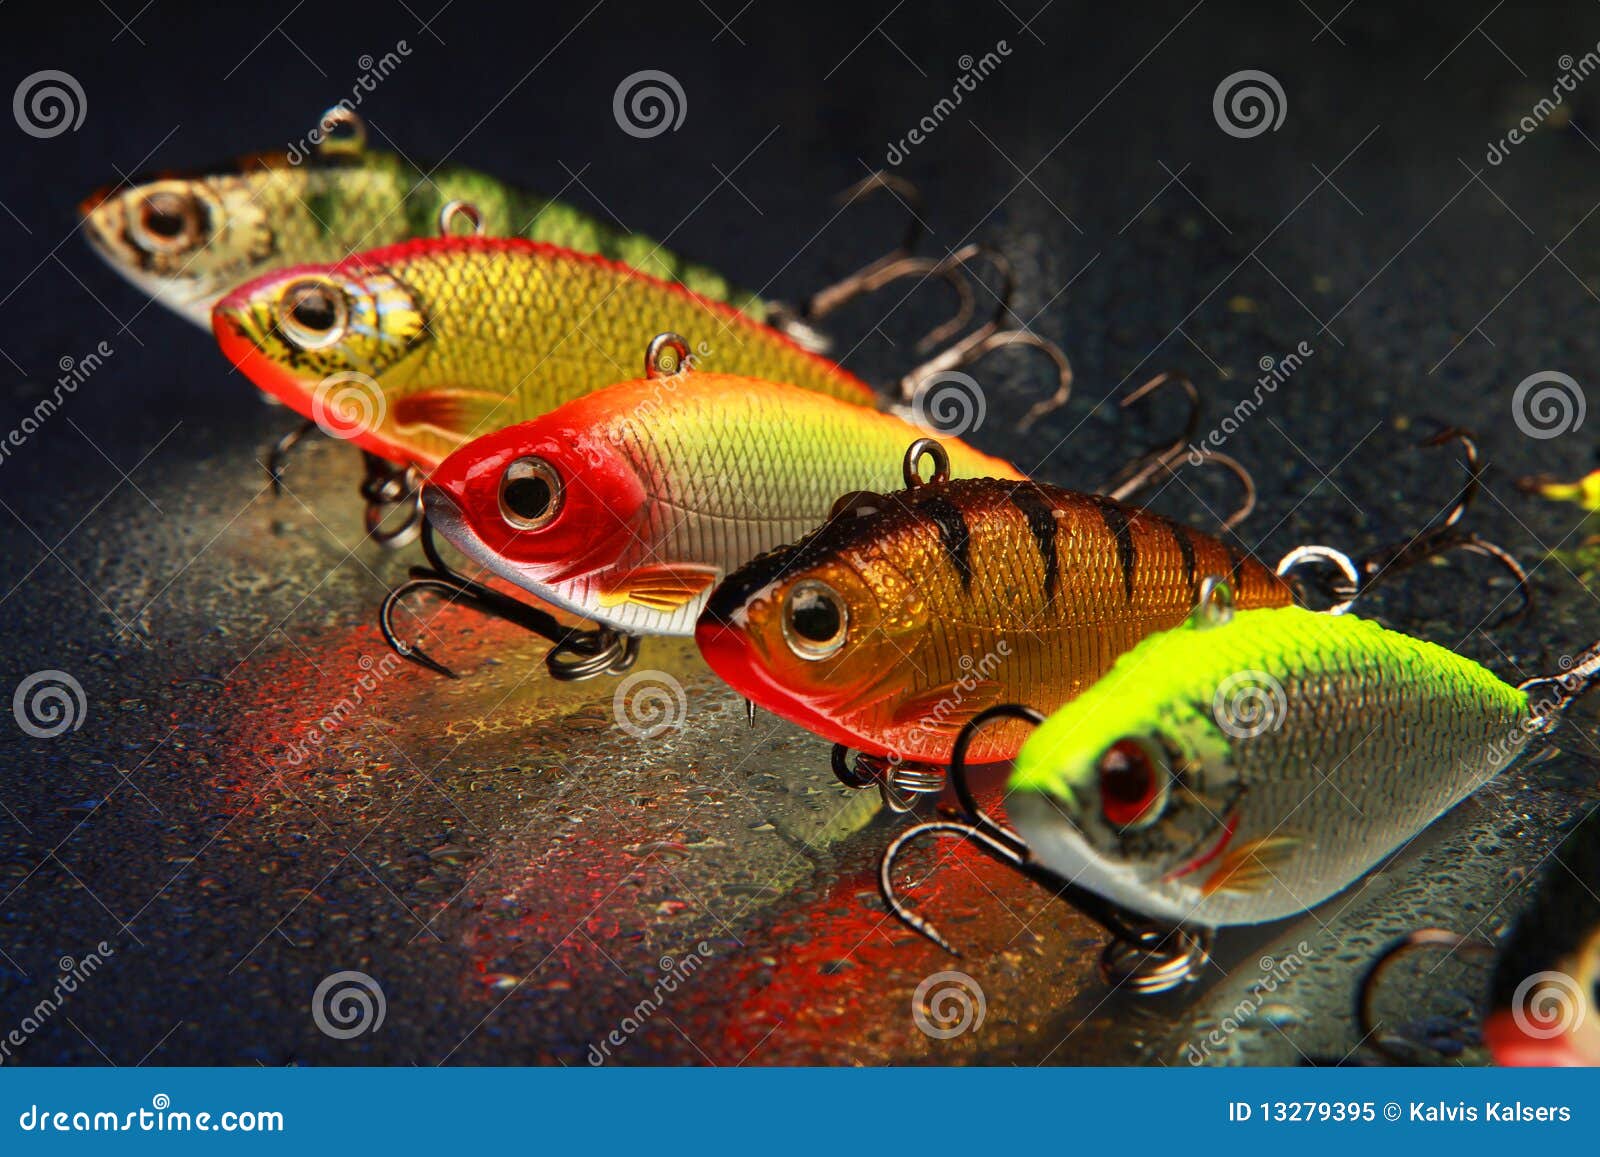 Señuelos de pesca fotos de stock, imágenes de Señuelos de pesca